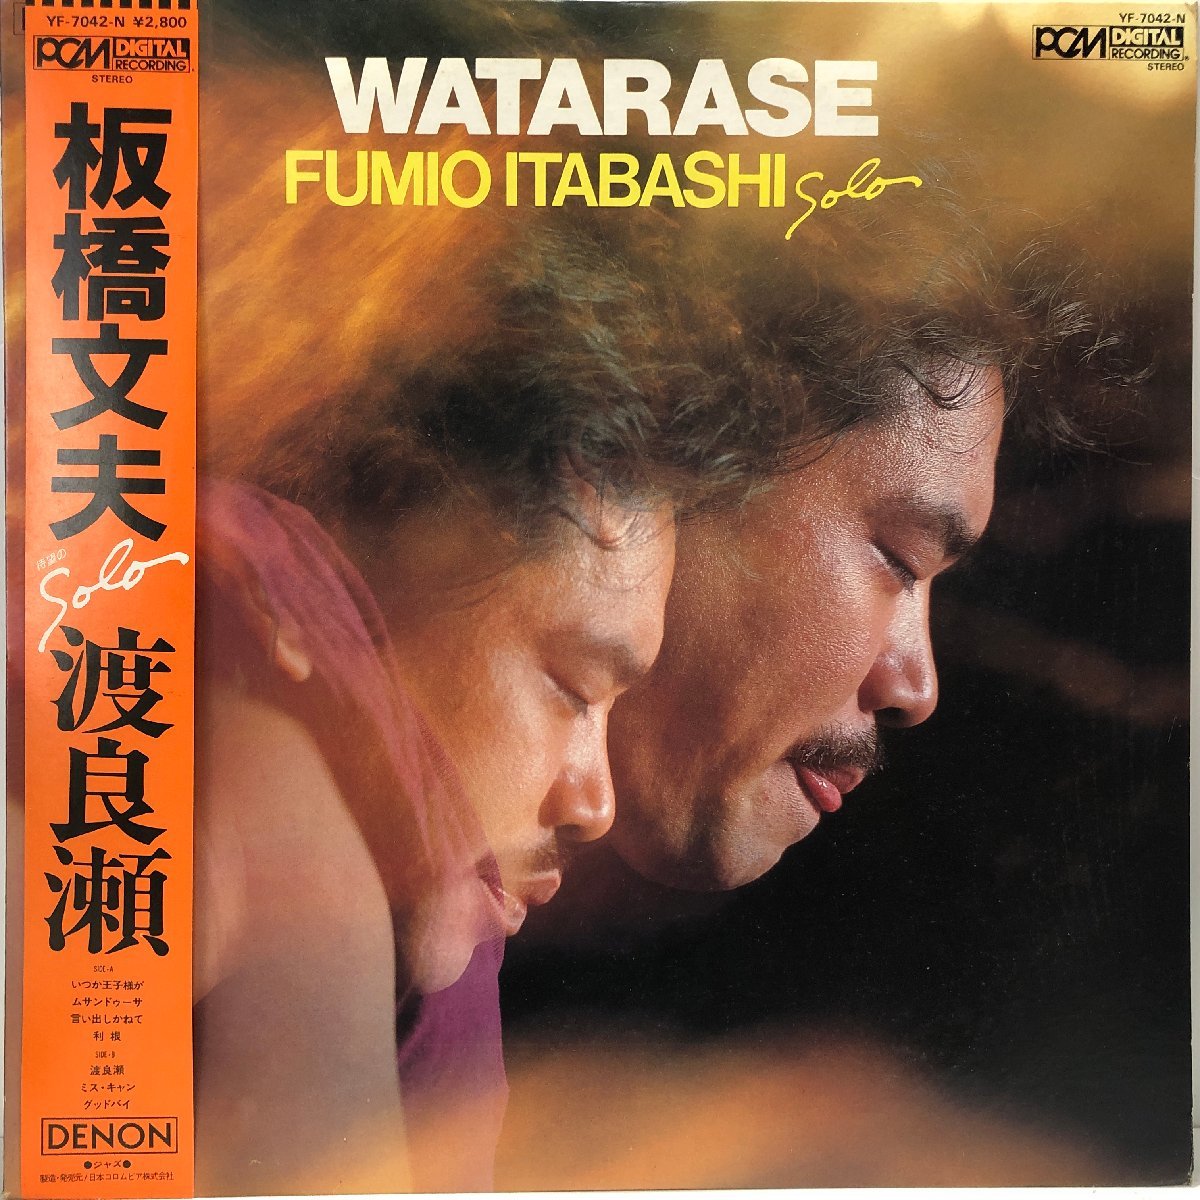 【LP】板橋文男 FUMIO ITABASHI / 渡良瀬 WATARASE / YF7042-N